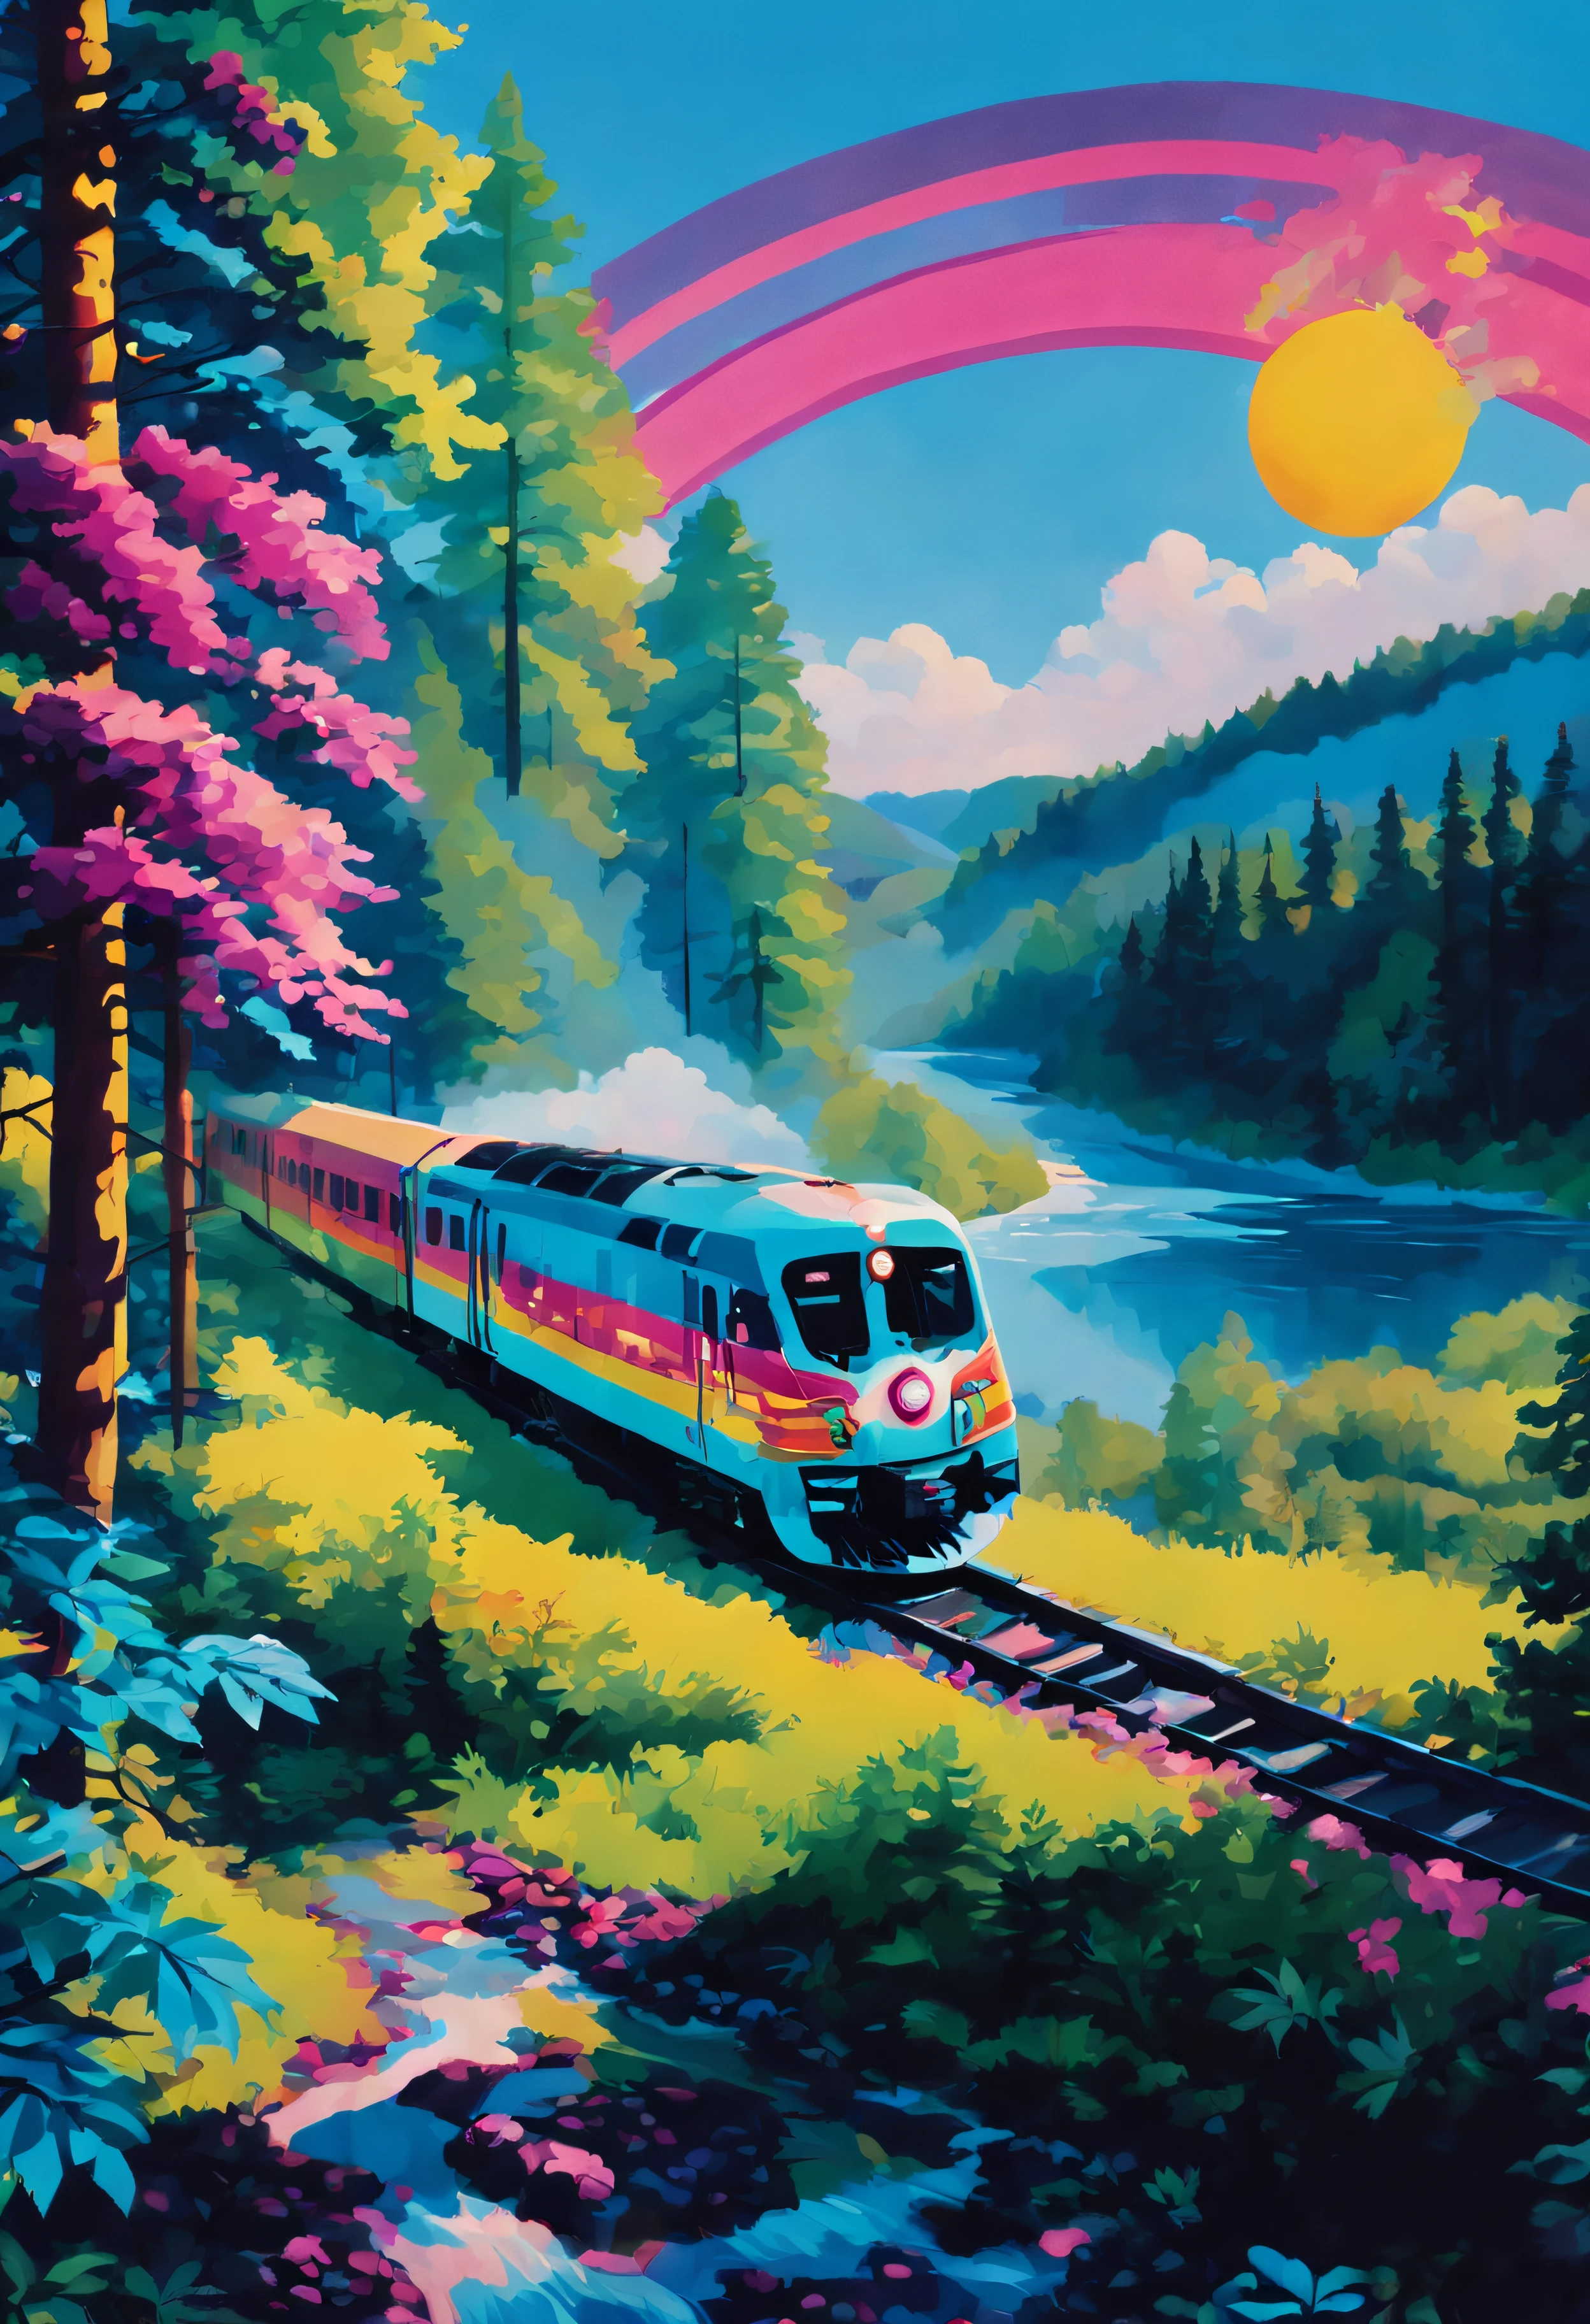 สไตล์นีออน, รถไฟกำลังเคลื่อนตัวผ่านป่า. รถไฟล้อมรอบด้วยต้นไม้. ท้องฟ้าเป็นสีฟ้าและดวงอาทิตย์ส่องแสง. มีแม่น้ำอยู่ด้านหลัง.